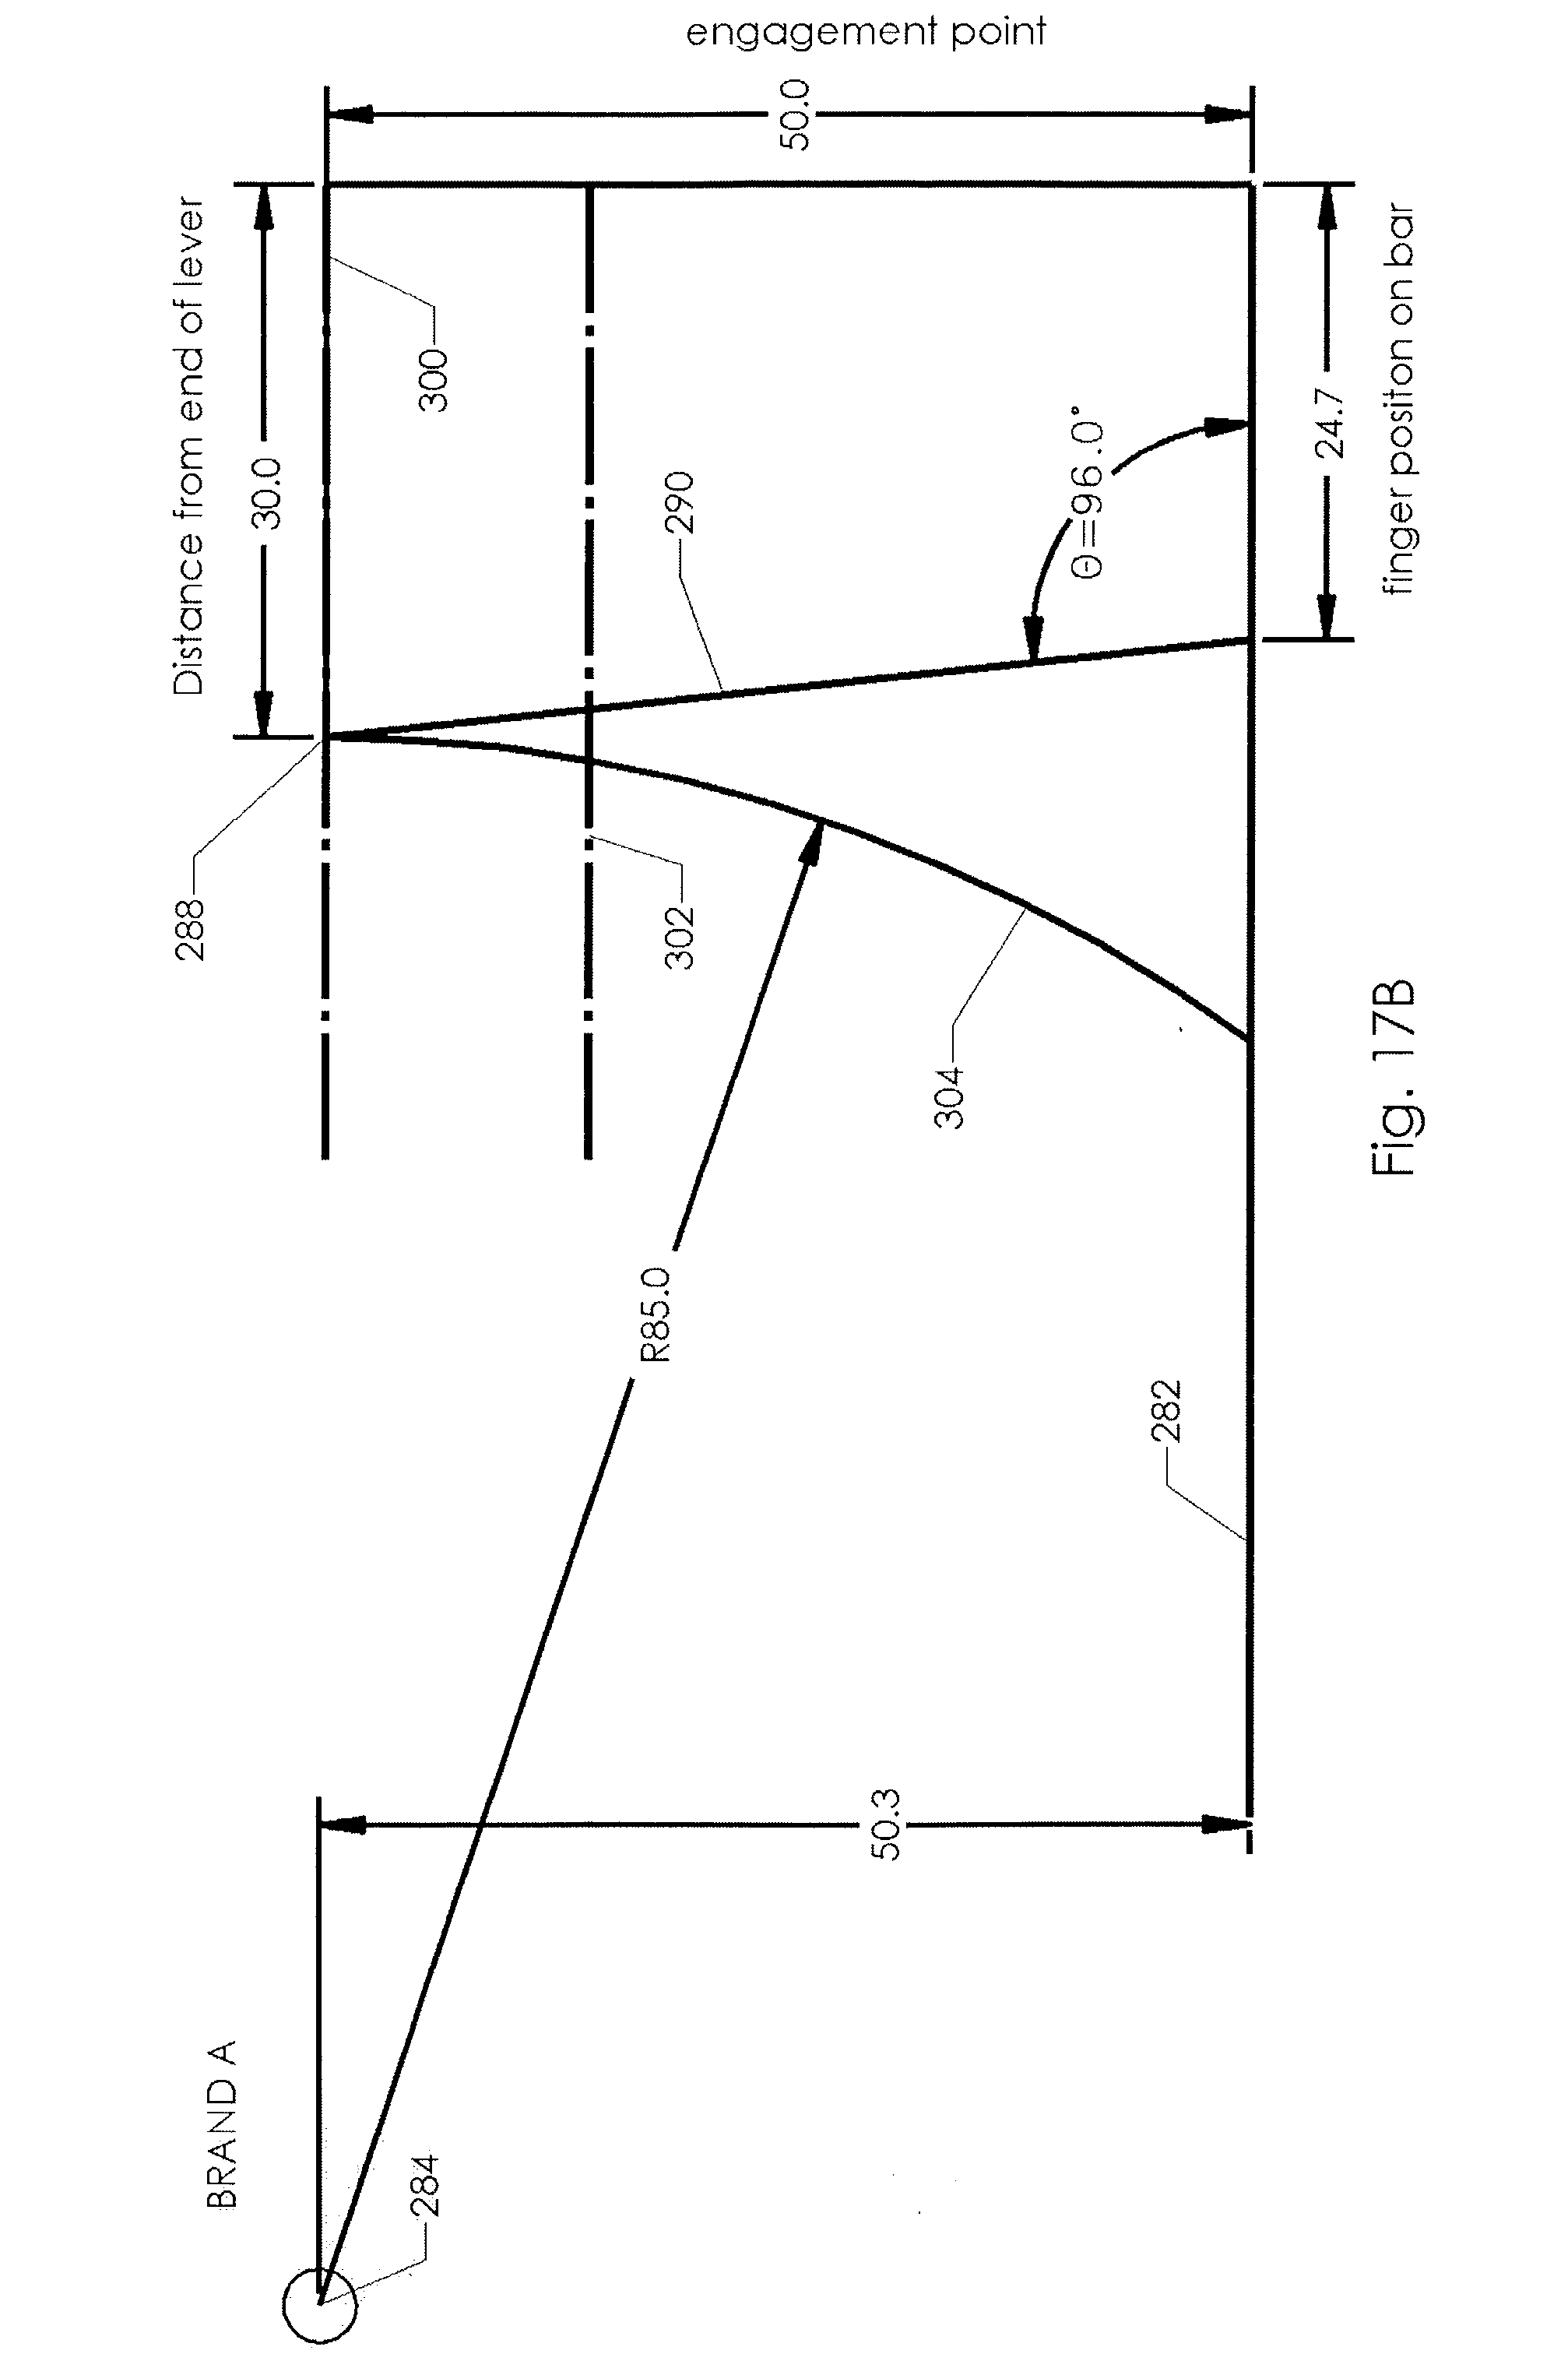 jaybrake master cylinder diagram